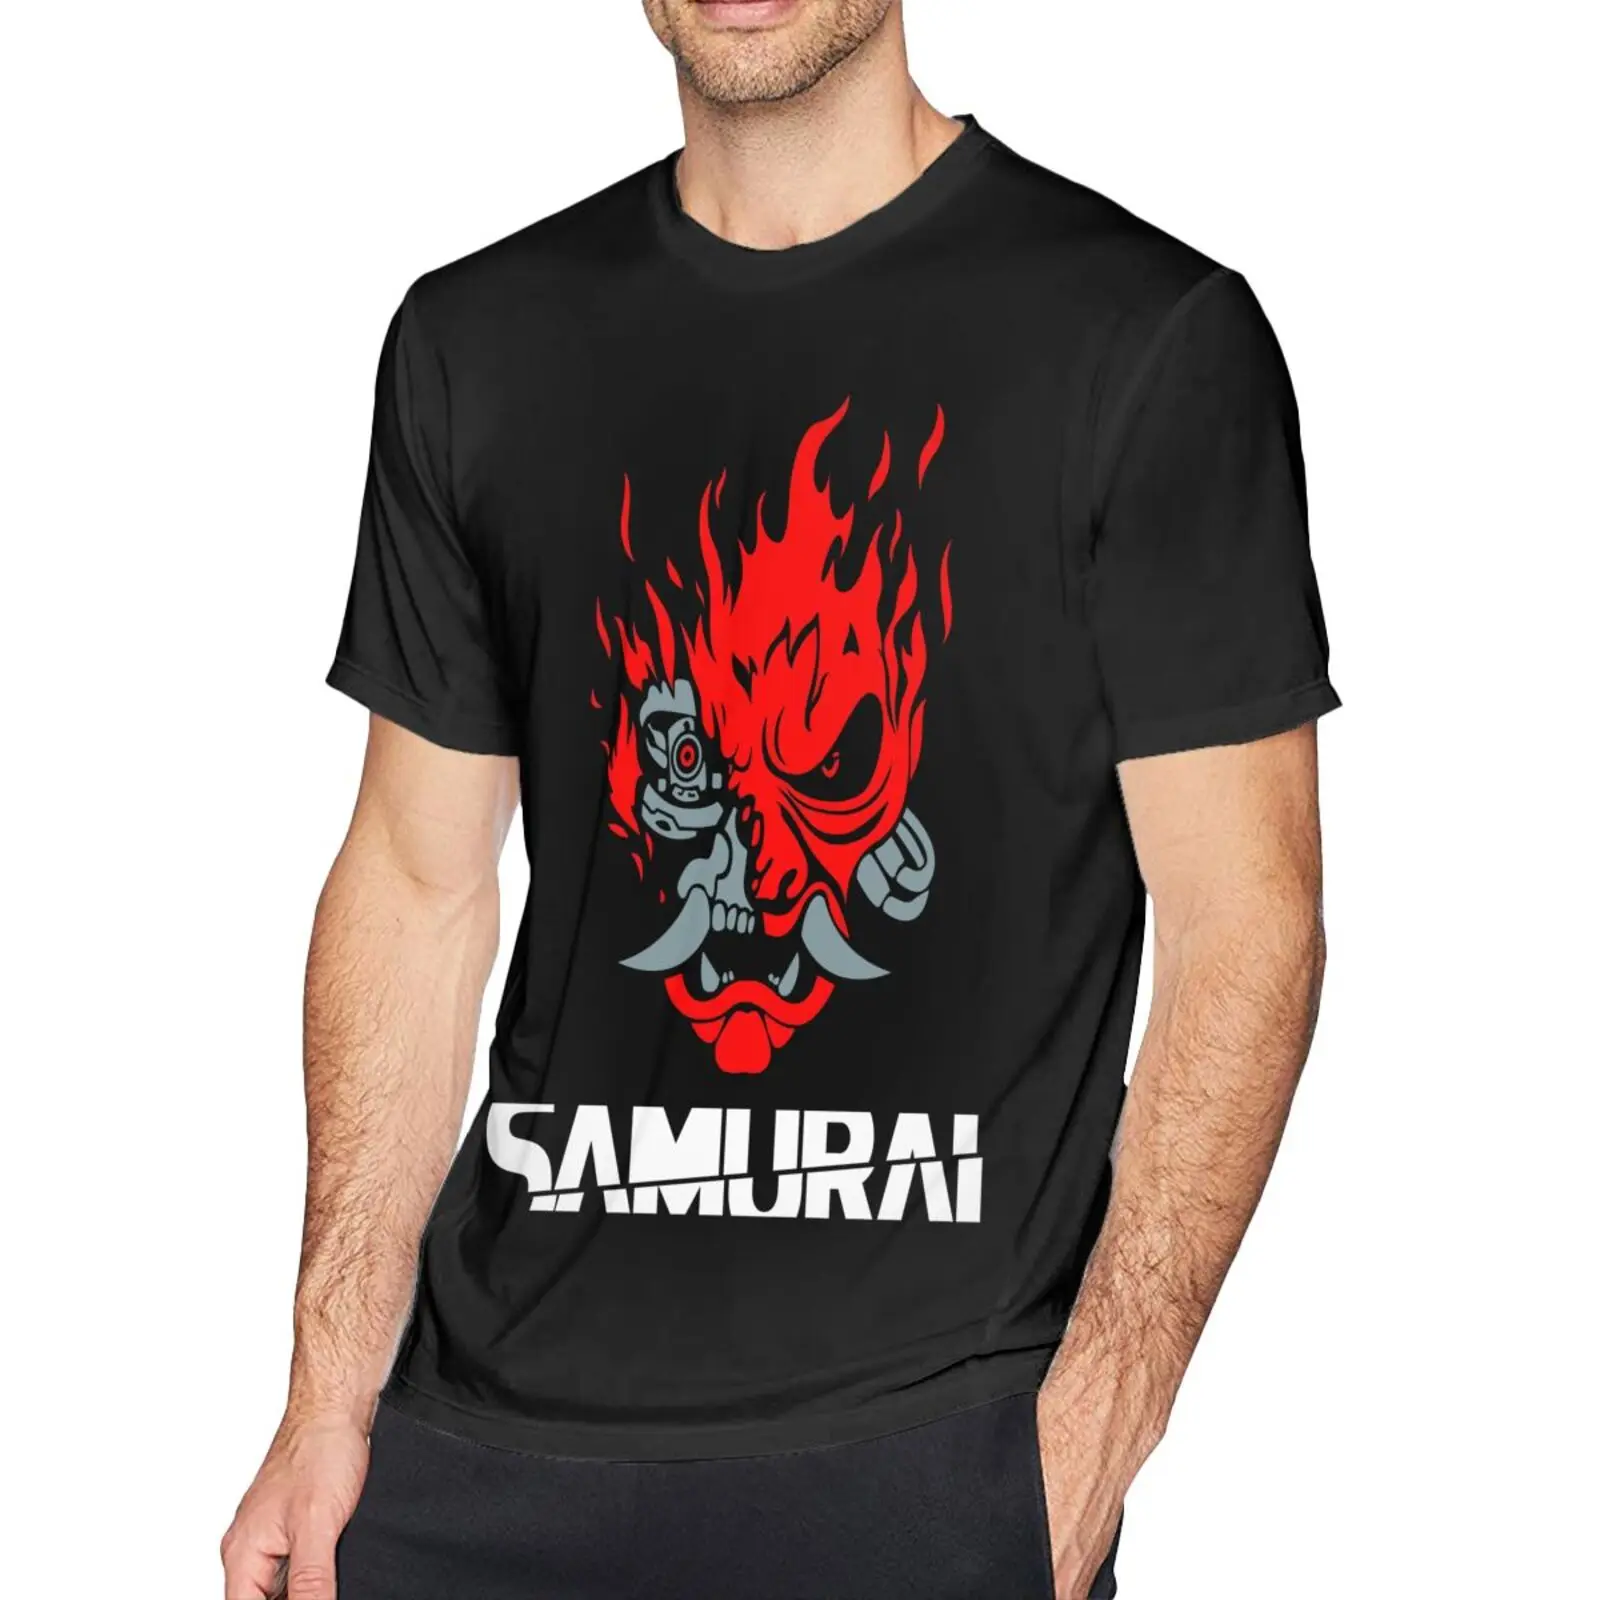 

Мужская футболка с японскими играми Самурай 2077 в художественном стиле 553, мужские рубашки, футболки с коротким рукавом манга, футболки с ман...